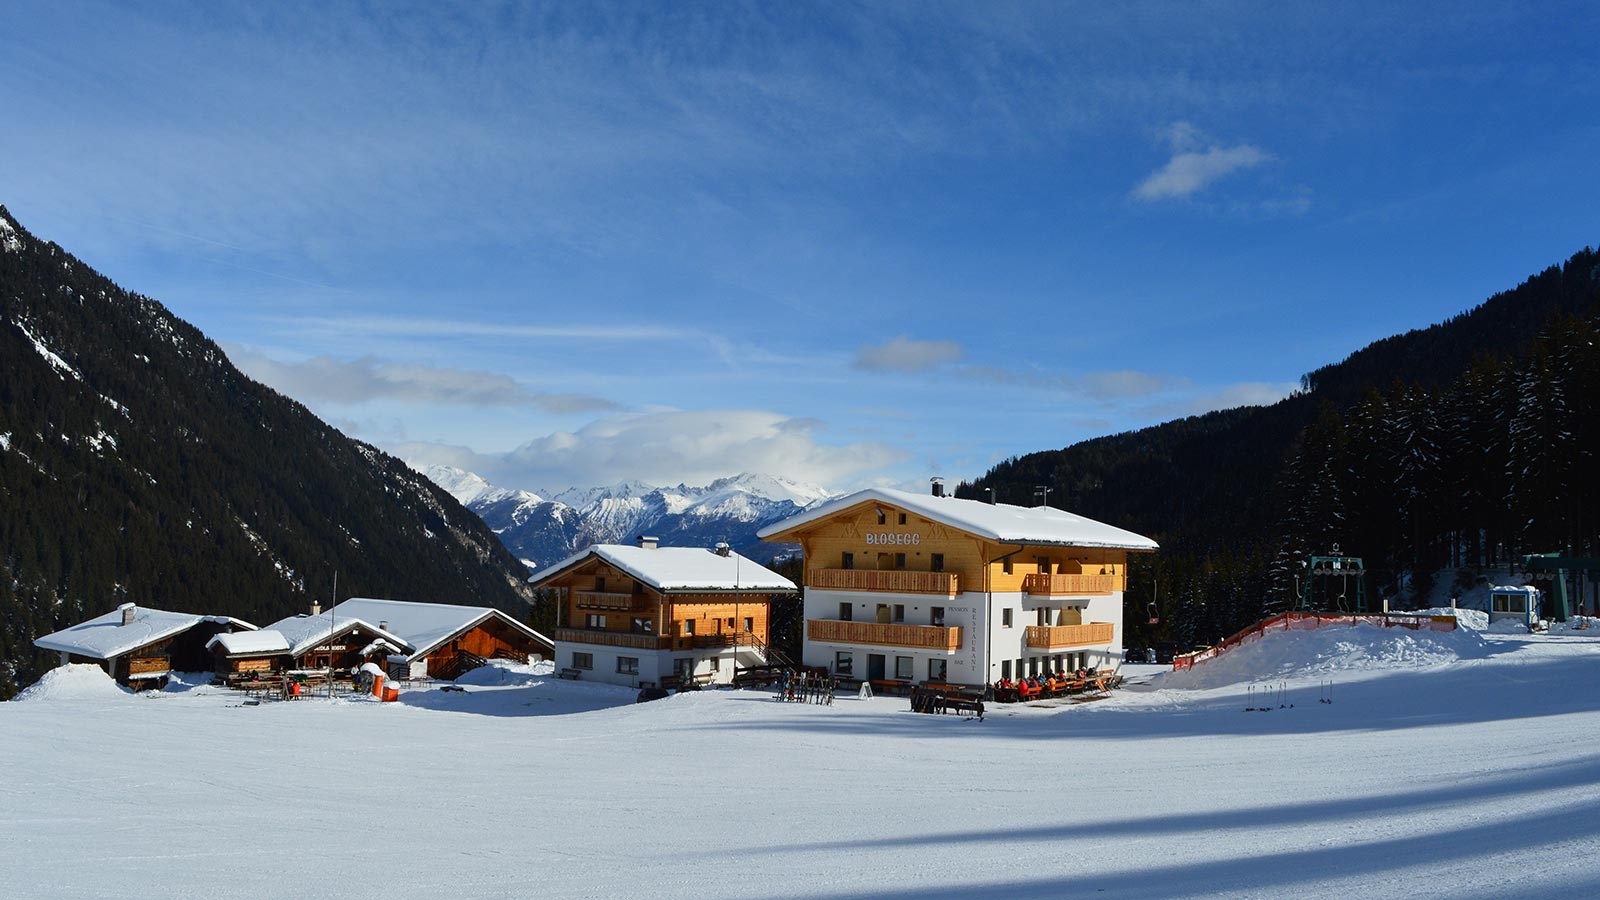 Das Hotel Blosegg von vorne gesehen, eingebettet in den Schnee während der Wintersaison